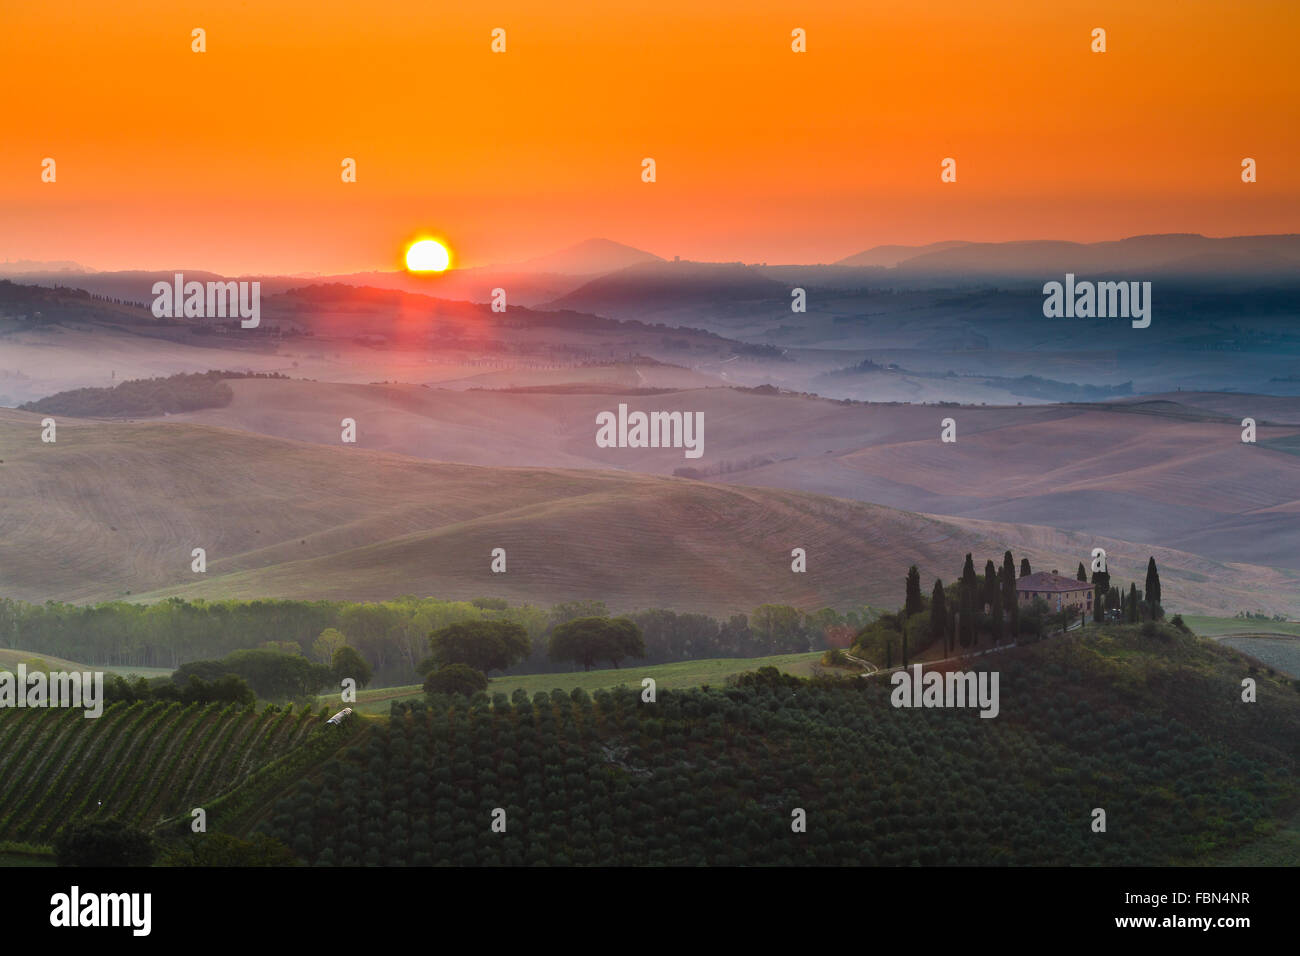 Podere Belvedere par sunrise, Val d'Orcia, Sienne, Toscane (région), Italie. Banque D'Images